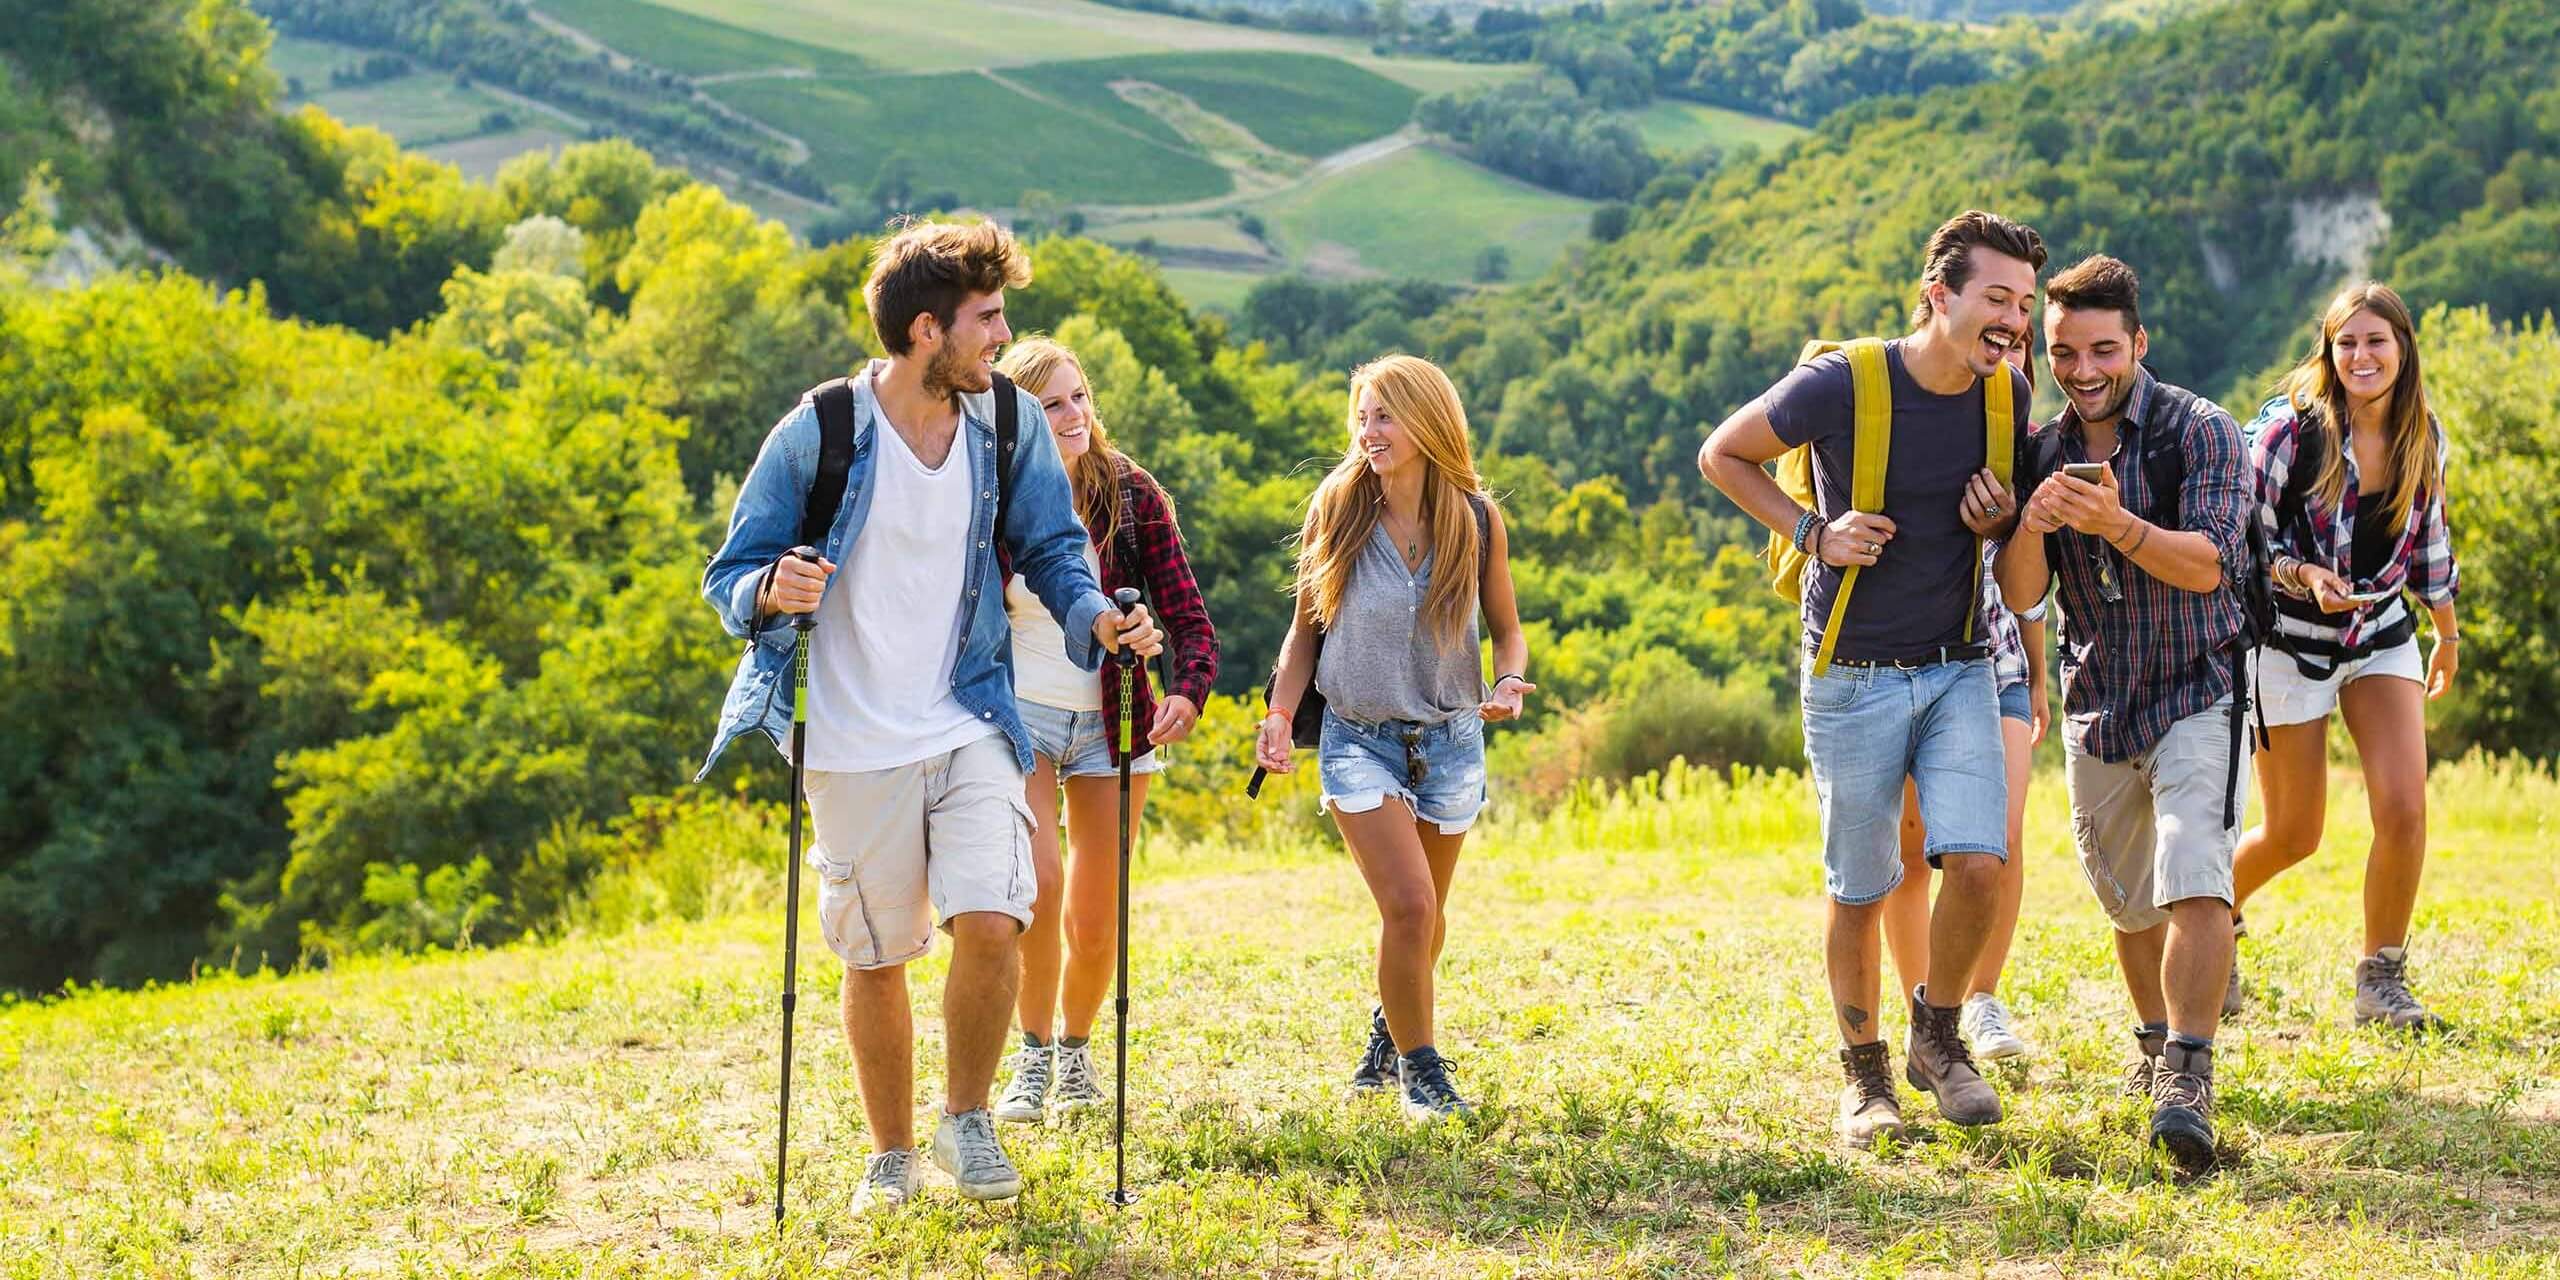 Eine Gruppe von sechs Personen, drei Männer und drei Frauen, wandert durch eine malerische, grüne Hügellandschaft. Sie lächeln und lachen, tragen lässige Outdoor-Kleidung, einige tragen Rucksäcke. Der Hintergrund zeigt üppiges Grün und sanfte Hügel.